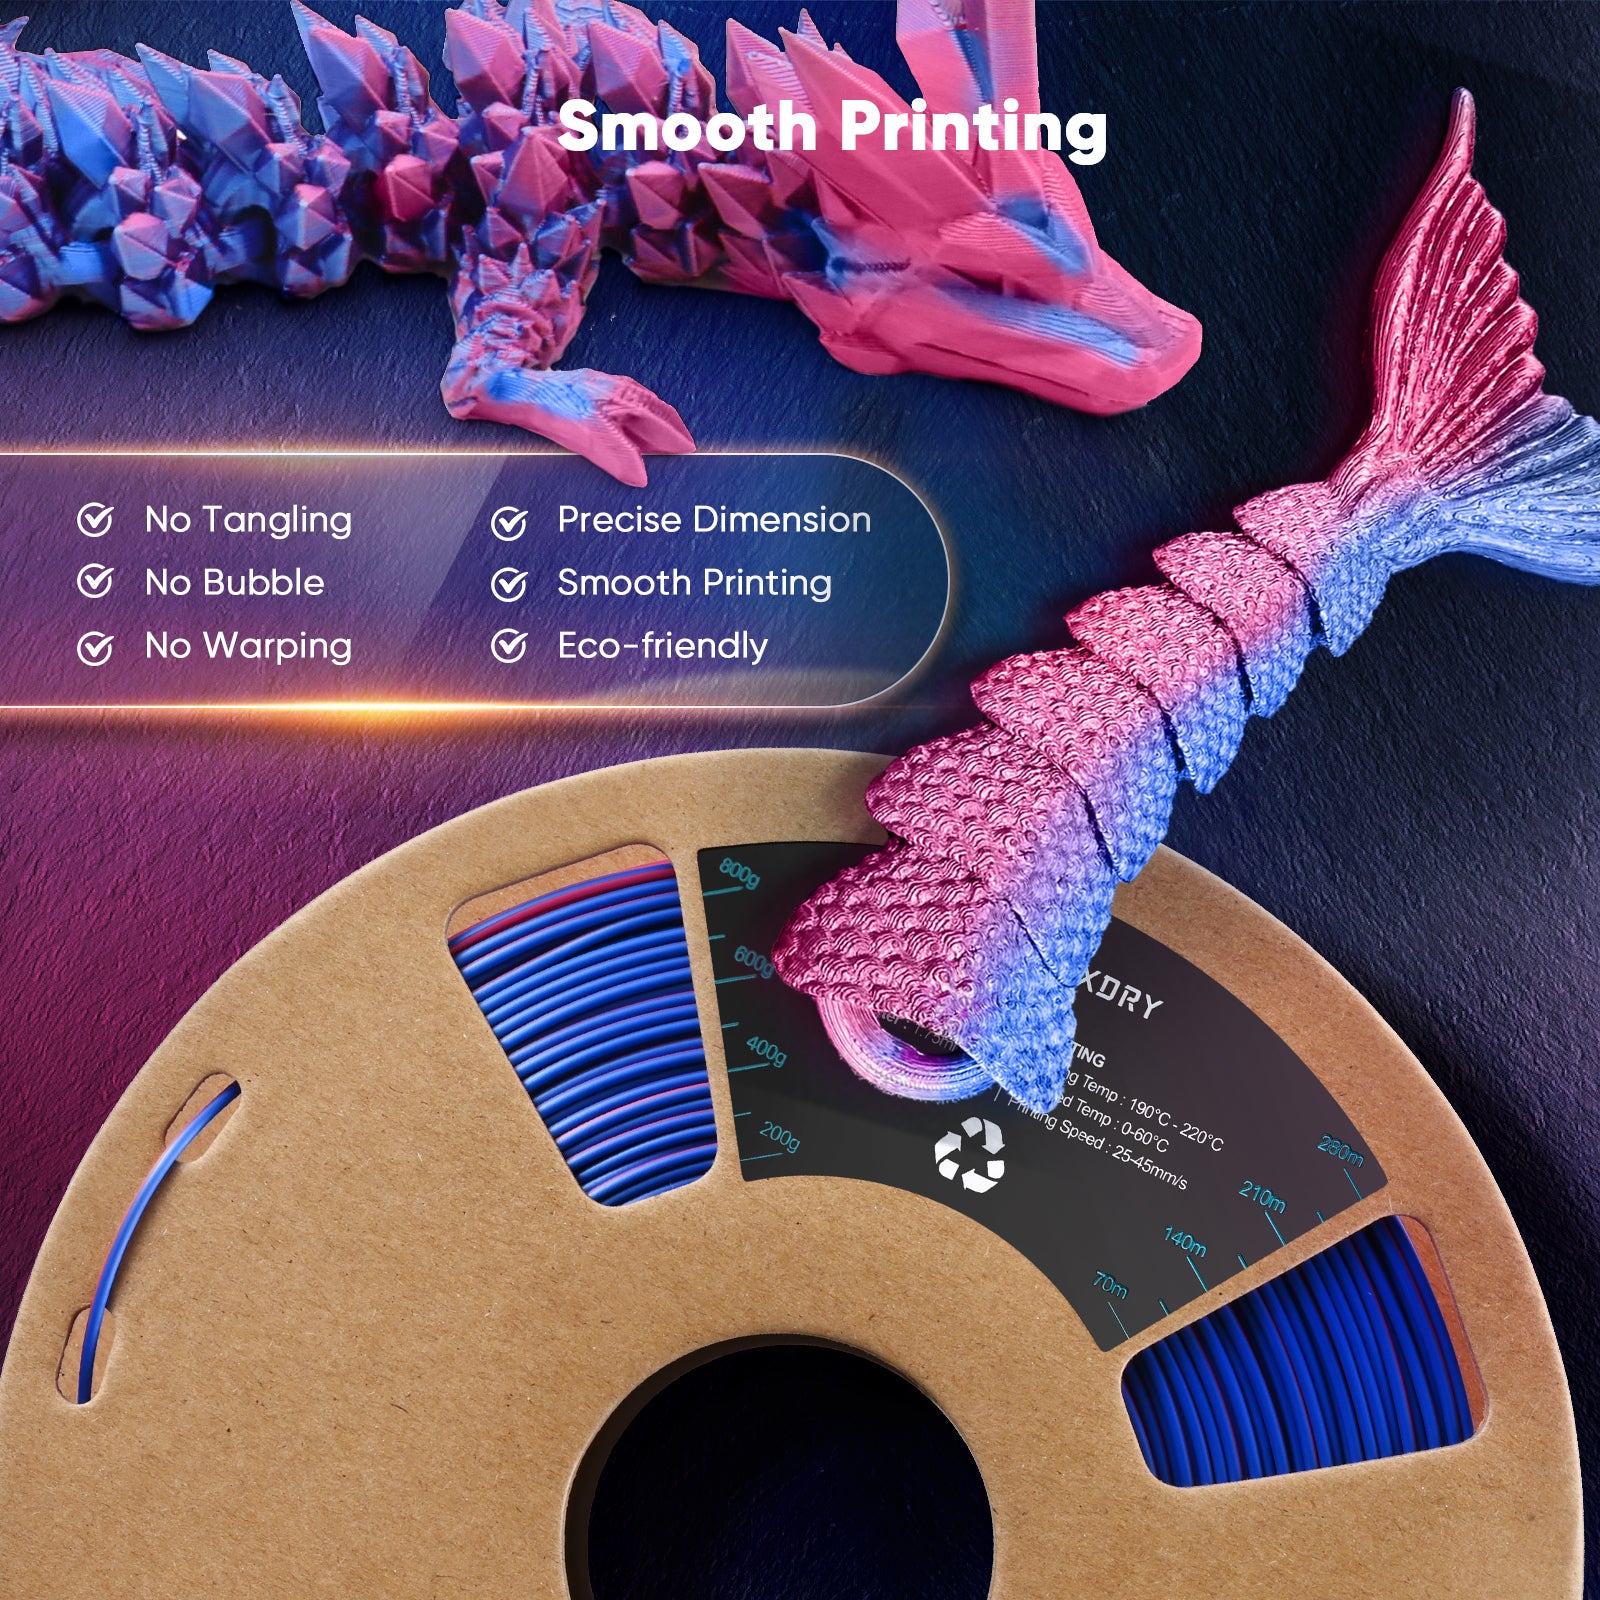 Nový tříbarevný materiál FIXDRY 3D tiskárny Filament